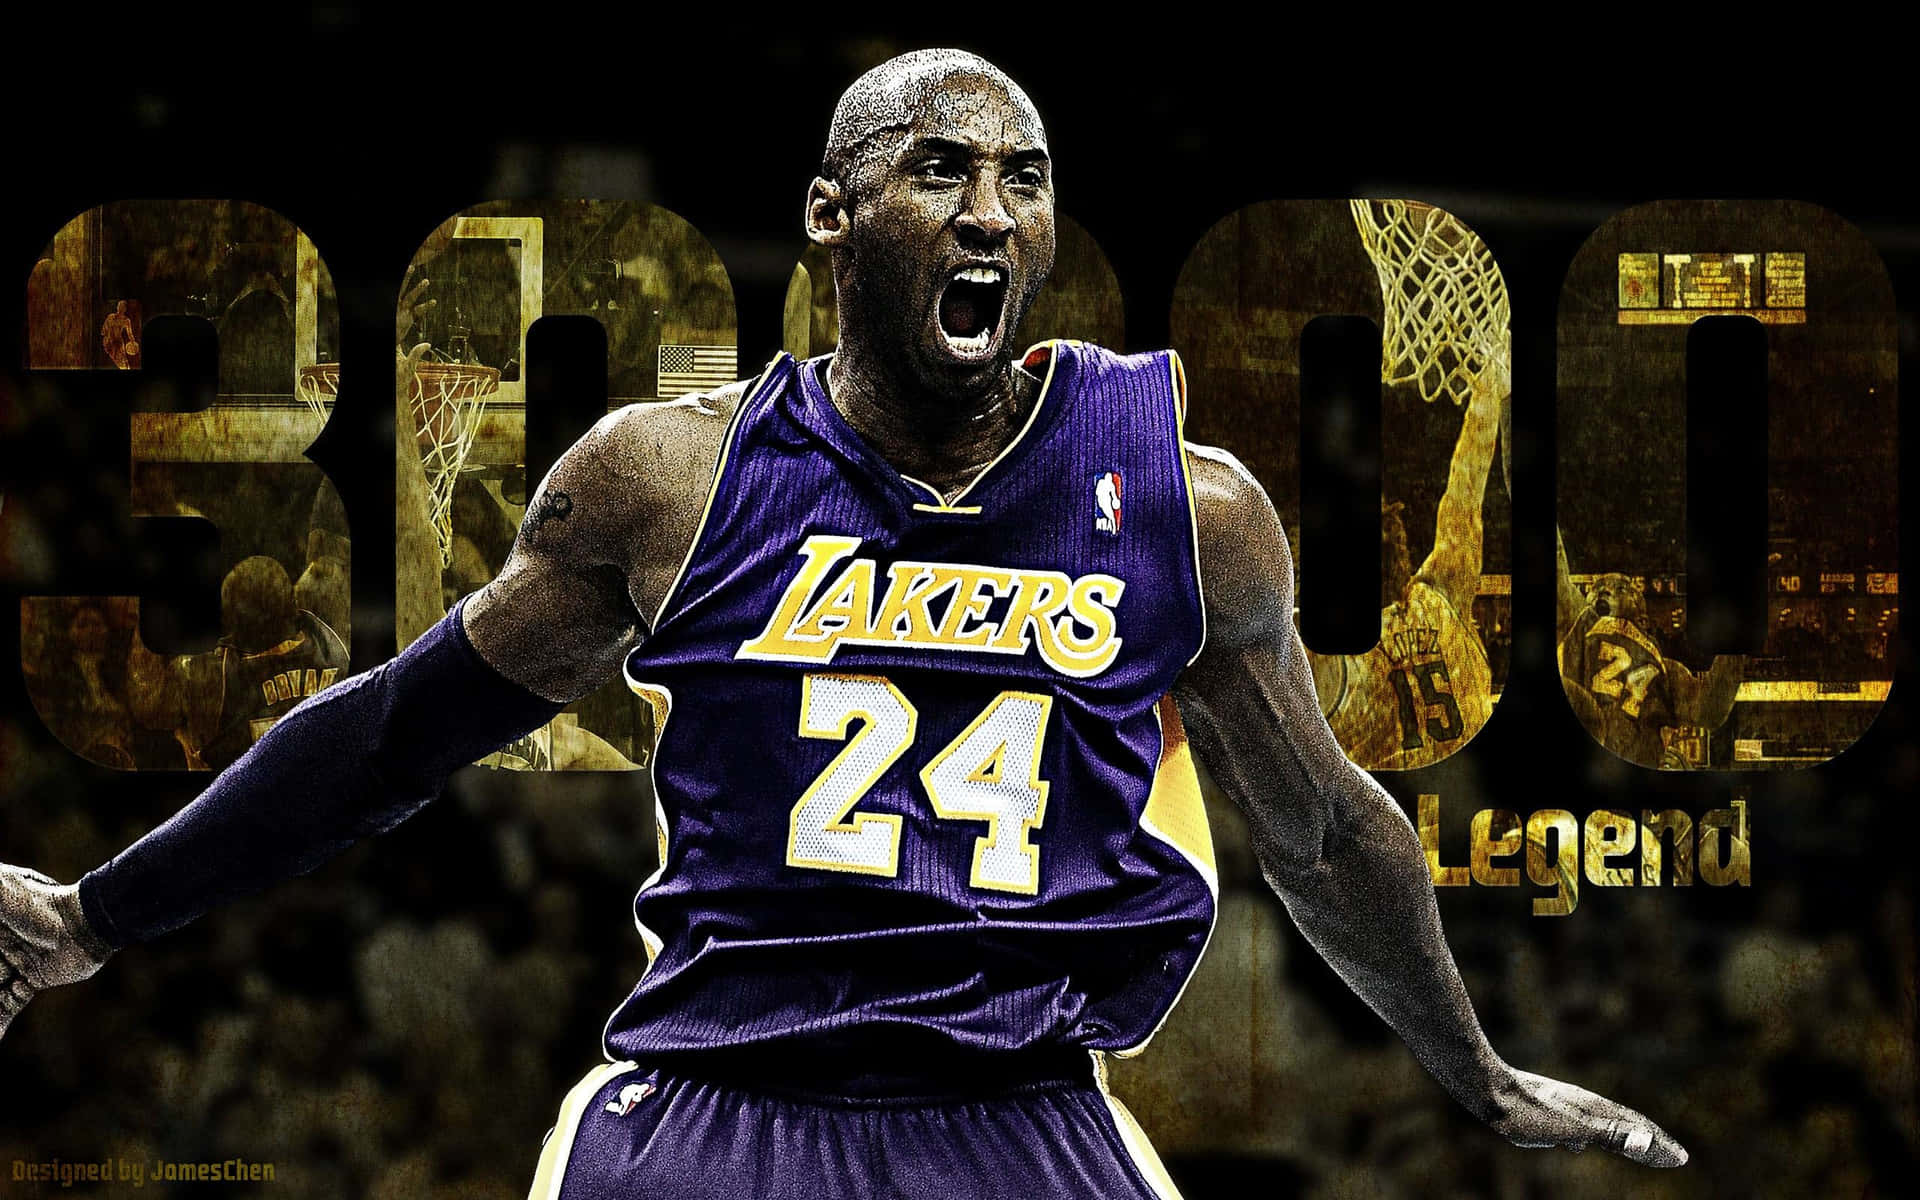 Lendáriojogador Do Los Angeles Lakers, Kobe Bryant, Em Ação Na Quadra. Papel de Parede